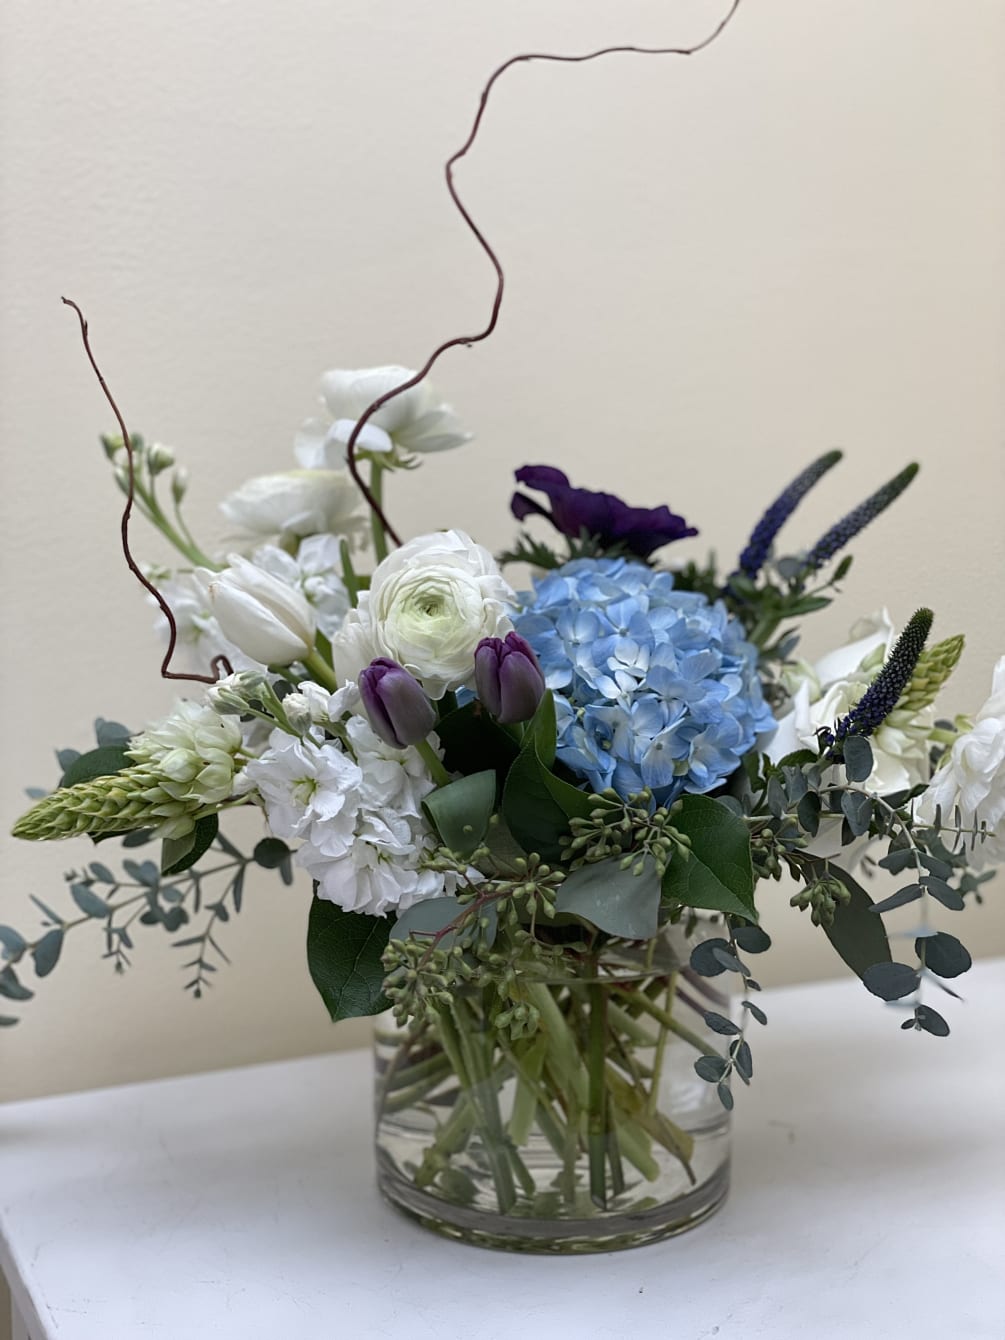 This arrangement is very pleasing to the eye, we use seasonal flowers